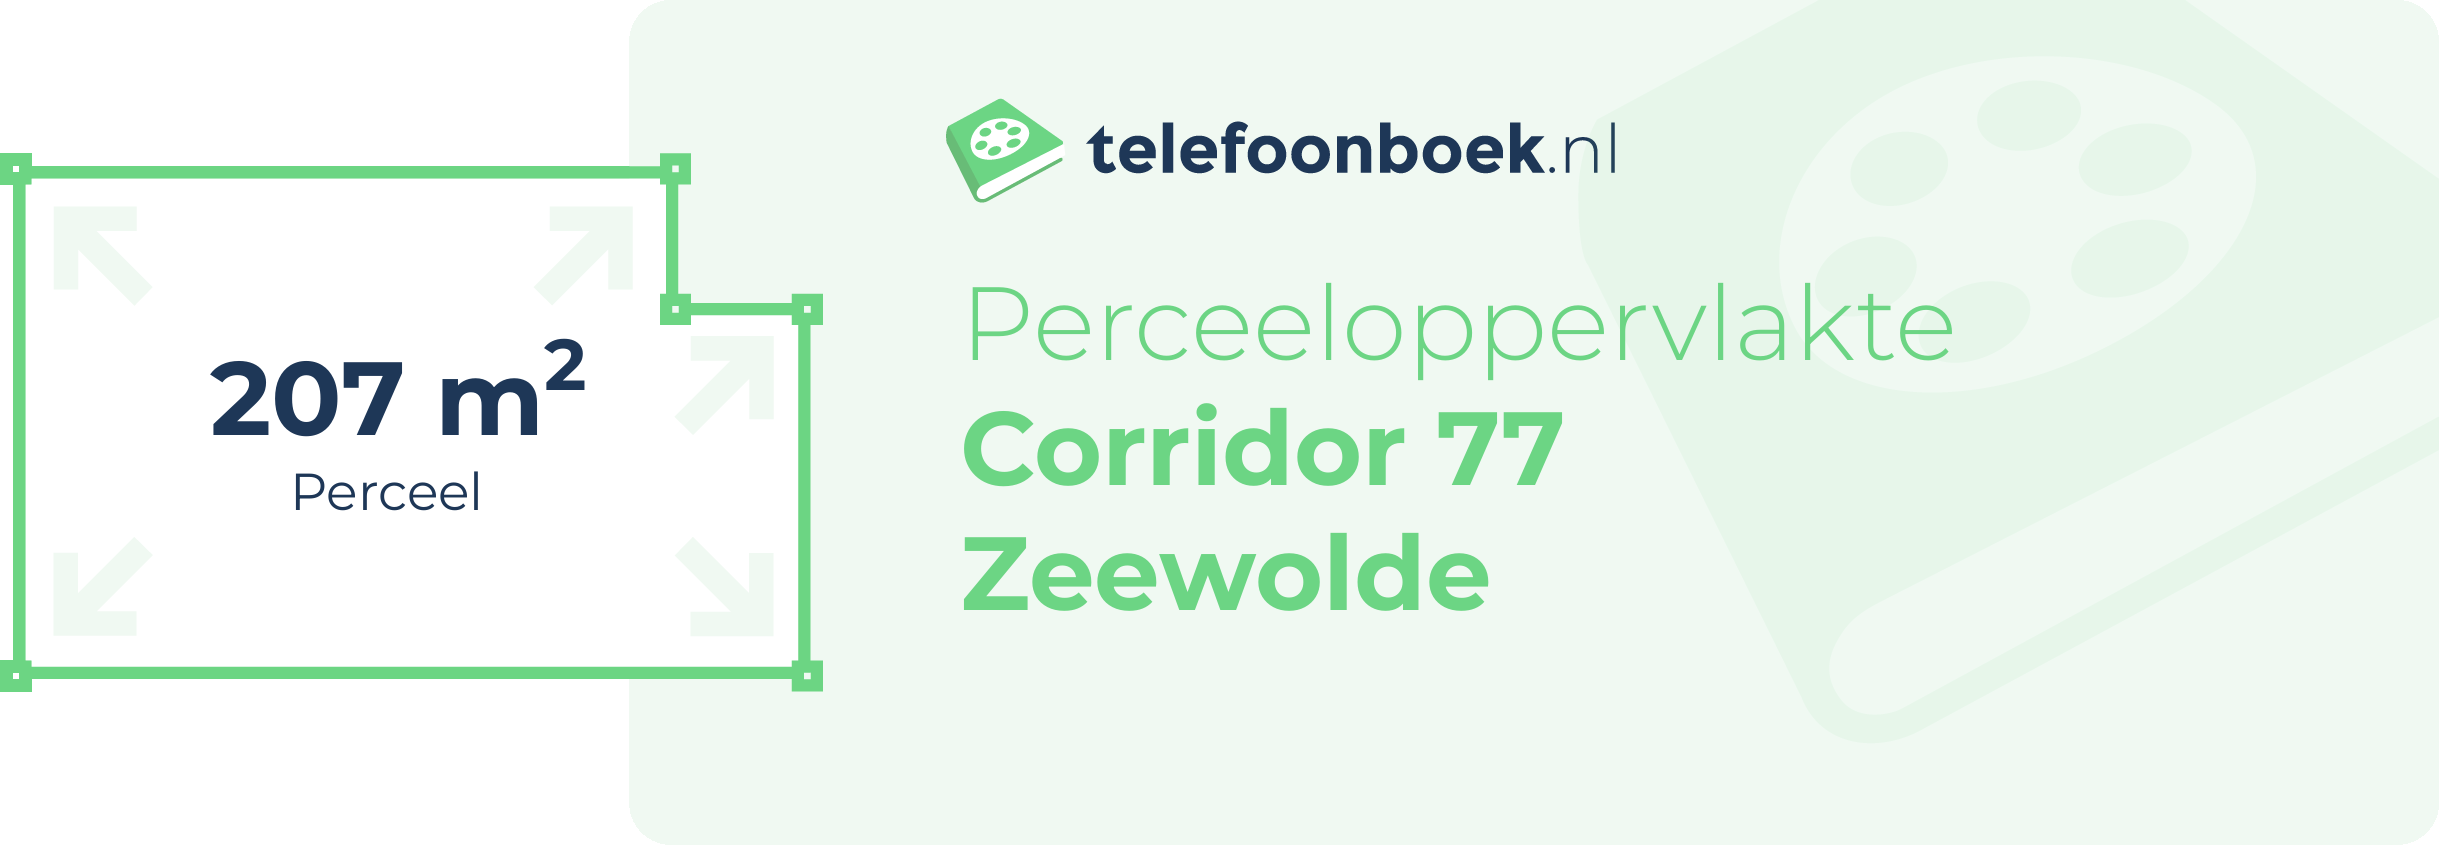 Perceeloppervlakte Corridor 77 Zeewolde